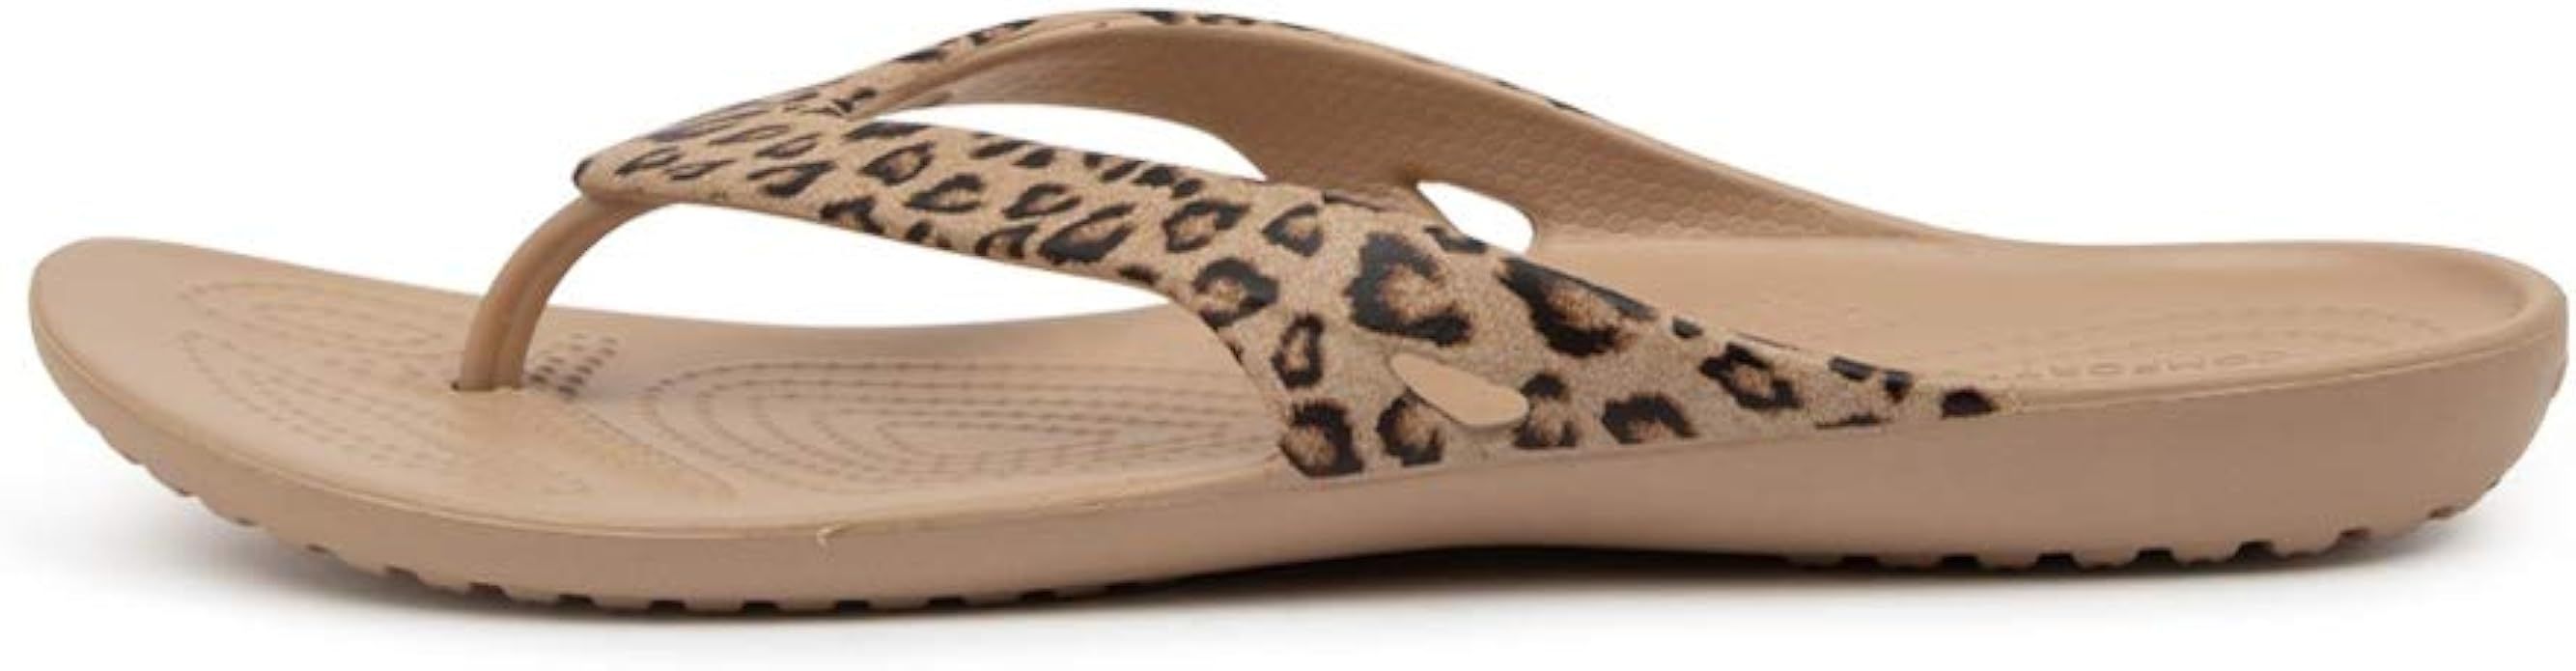 Crocs Women's Kadee Ii Embellished Flip Flops | Sandals | Amazon (US)